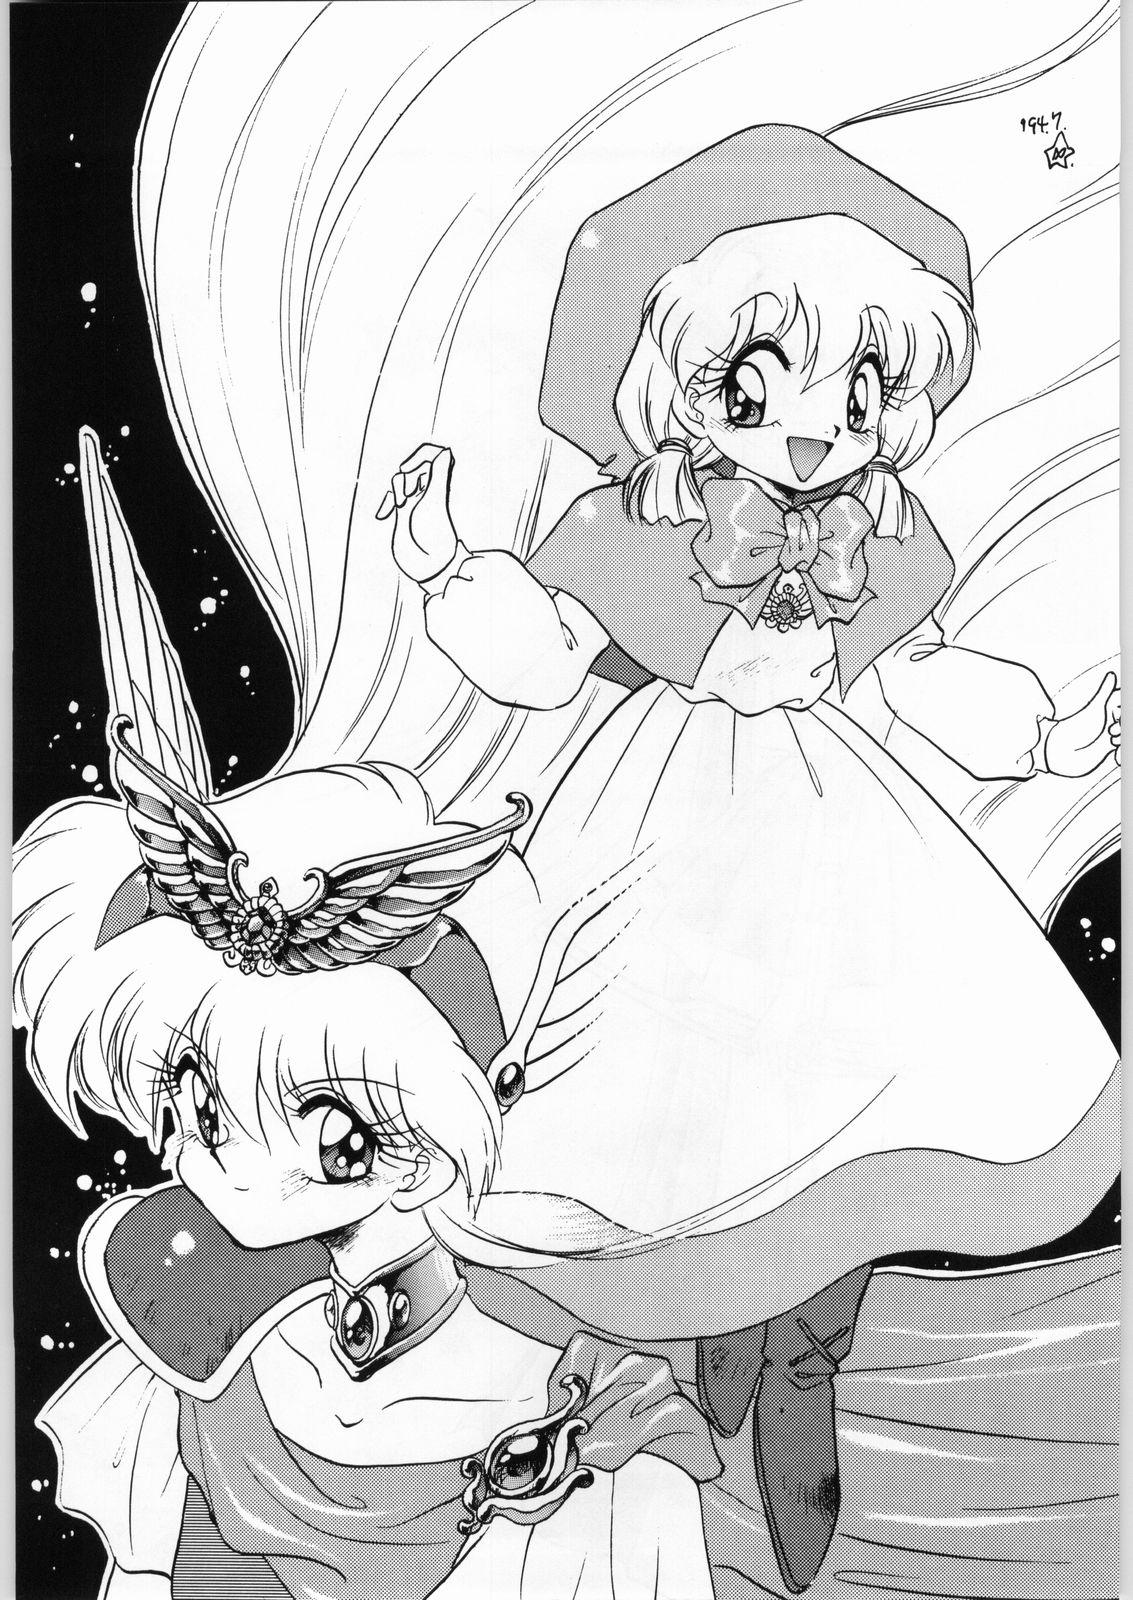 Roughsex Dance of Princess 3 - Sailor moon Tenchi muyo Akazukin cha cha Minky momo Ng knight lamune and 40 Porno - Page 4